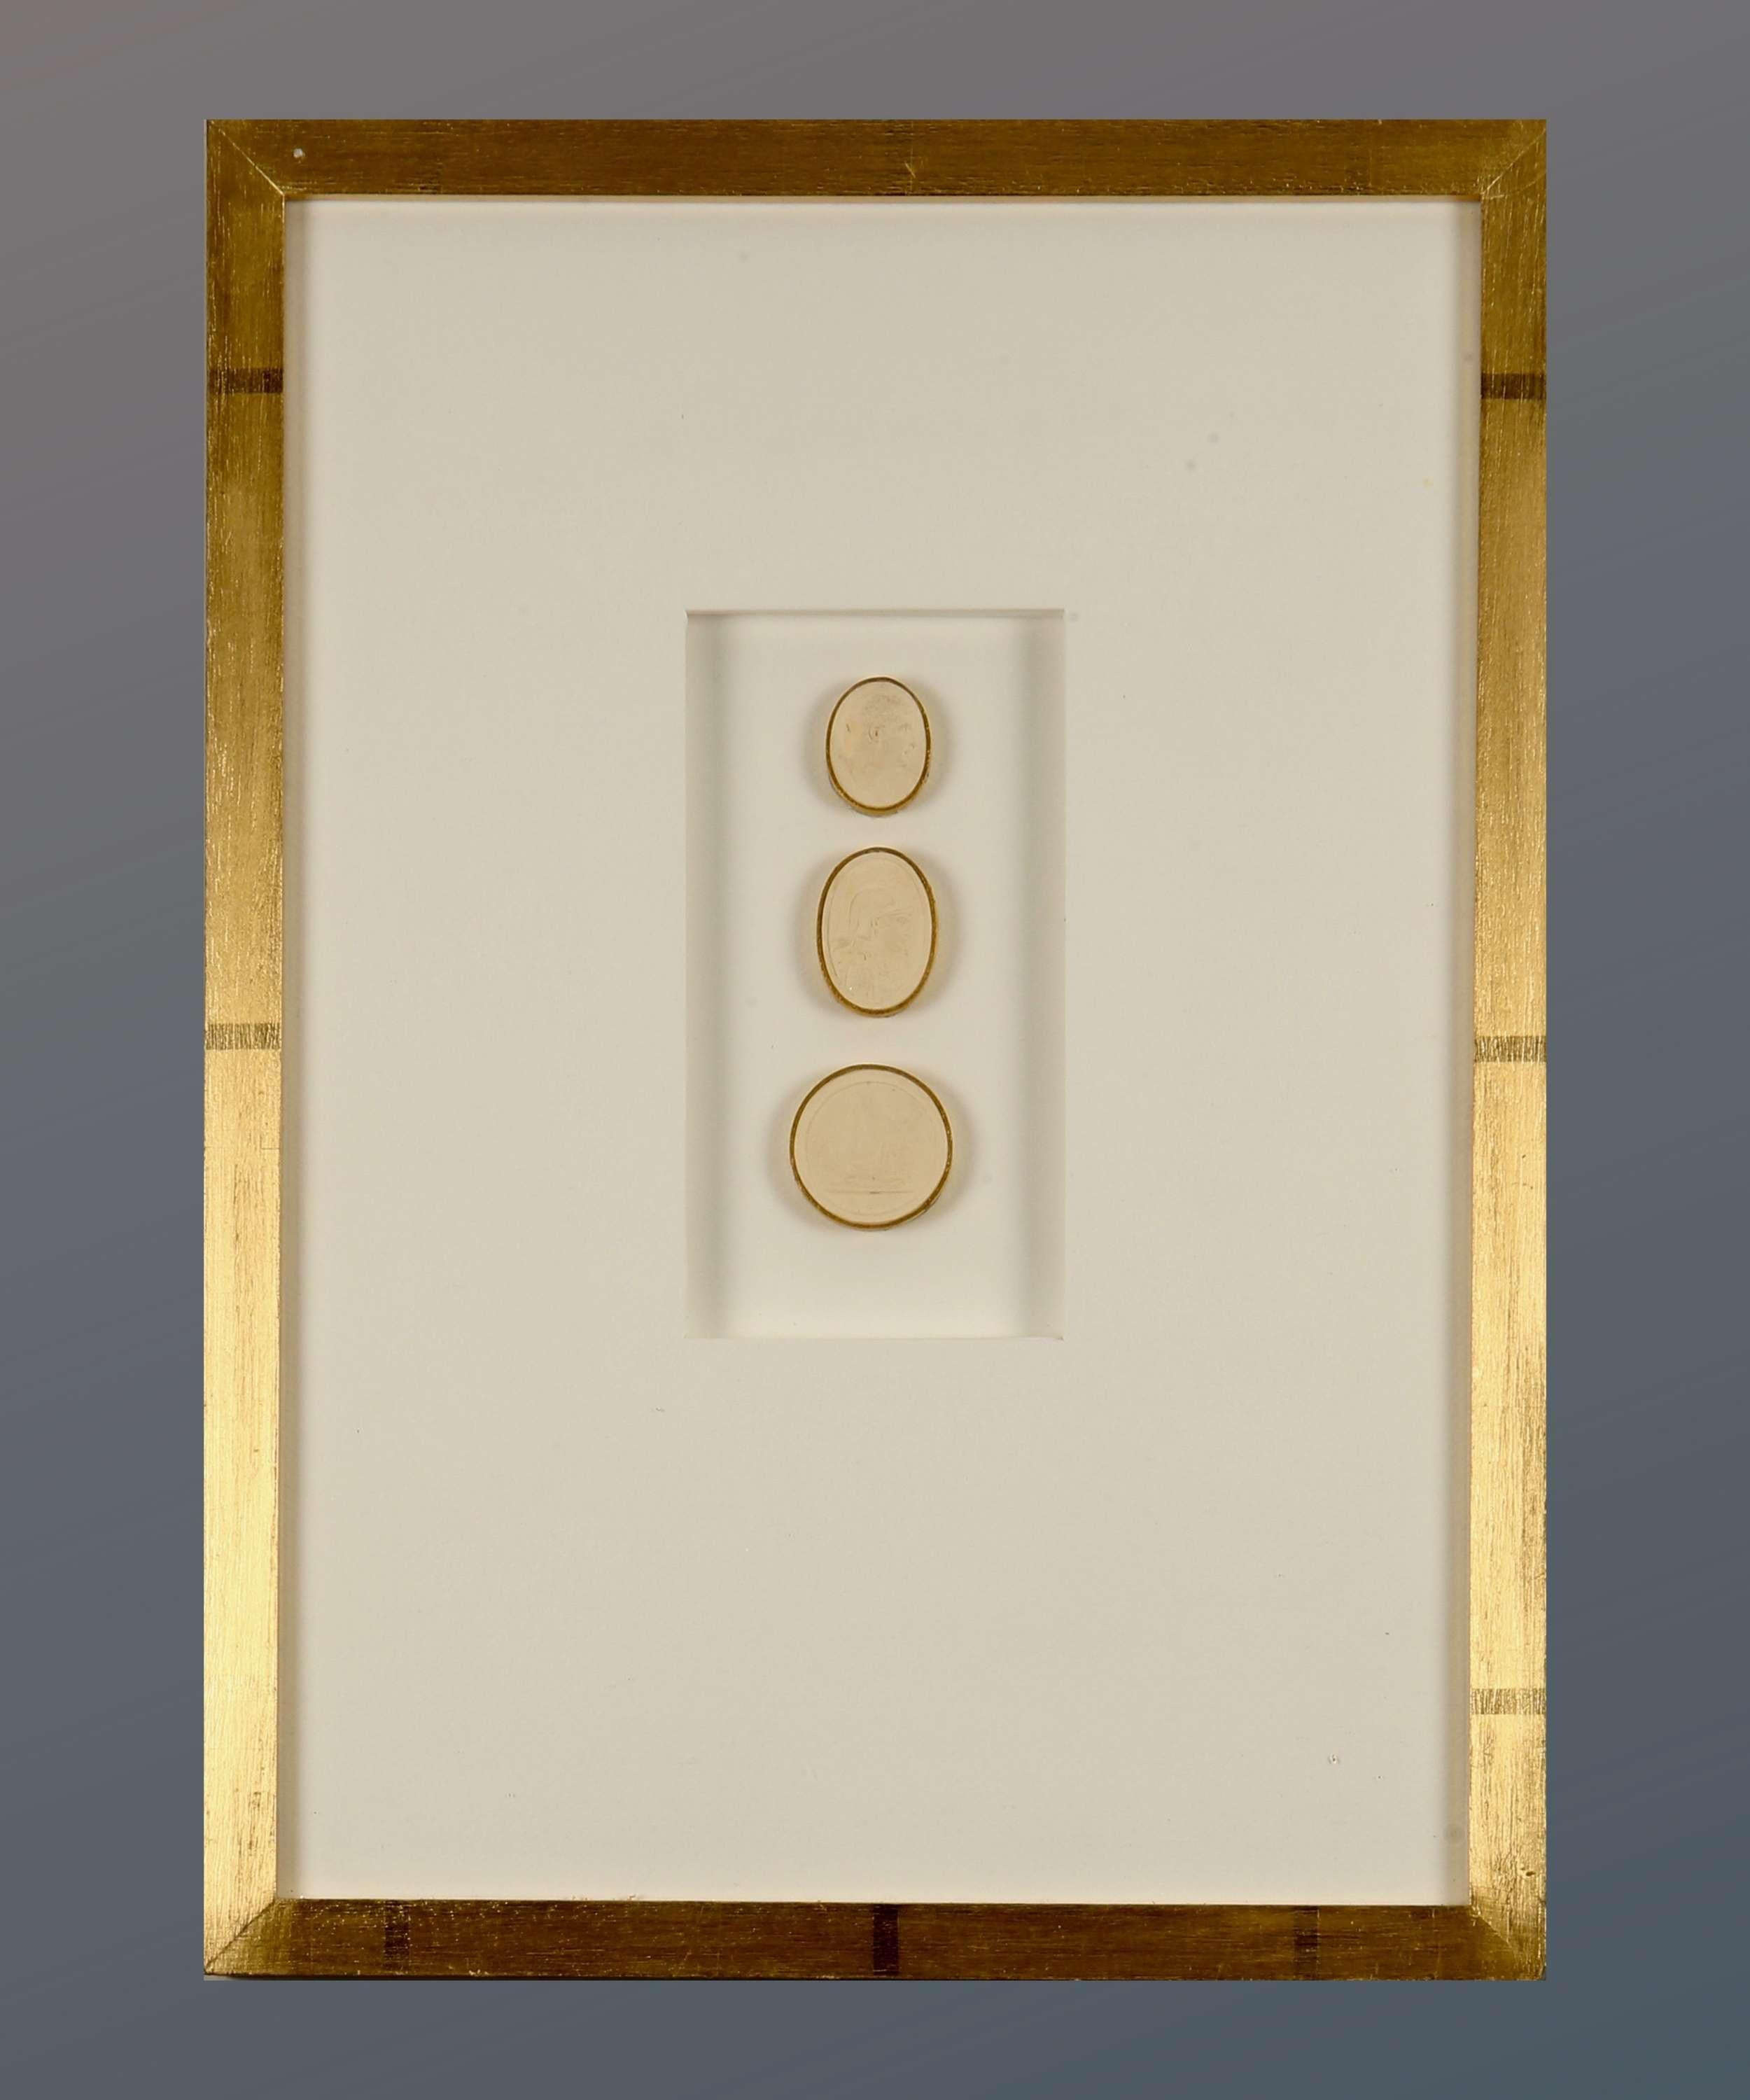 Paoletti Impronte, ‘Mussei Diversi’ Framed Plaster Cameo Seals, Rome c1800